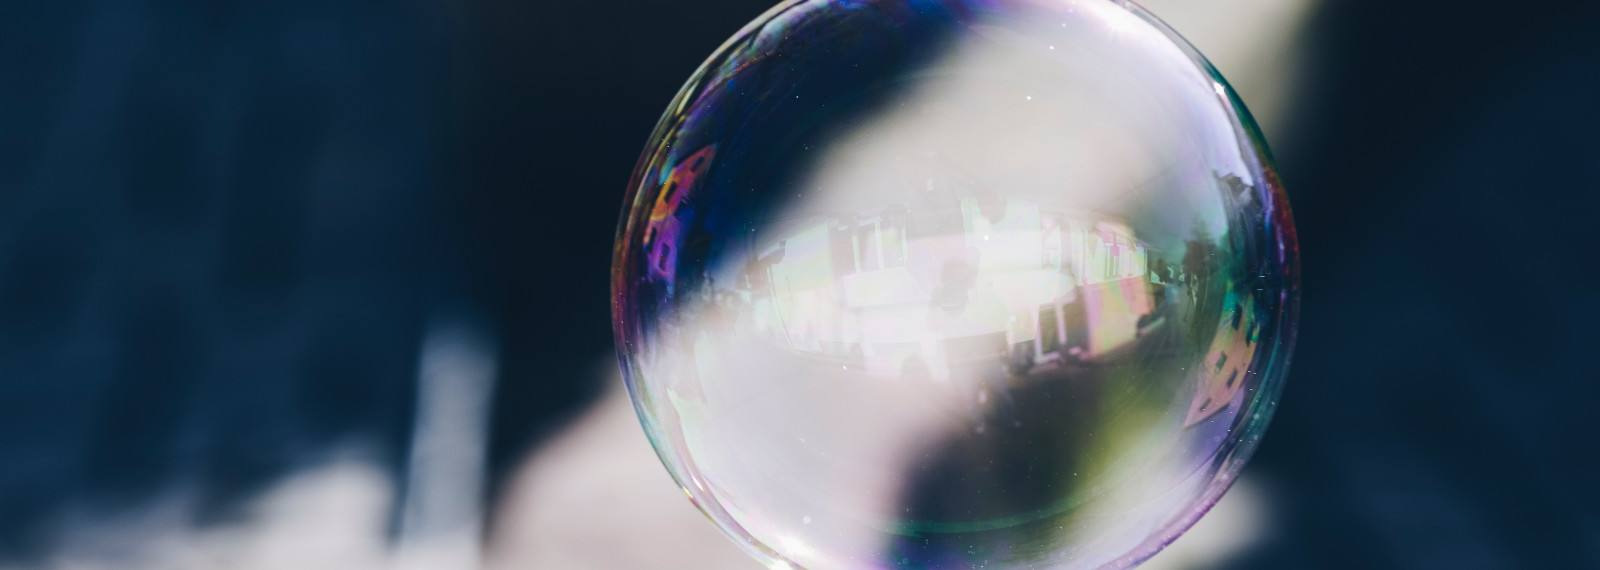 Transparent bubble